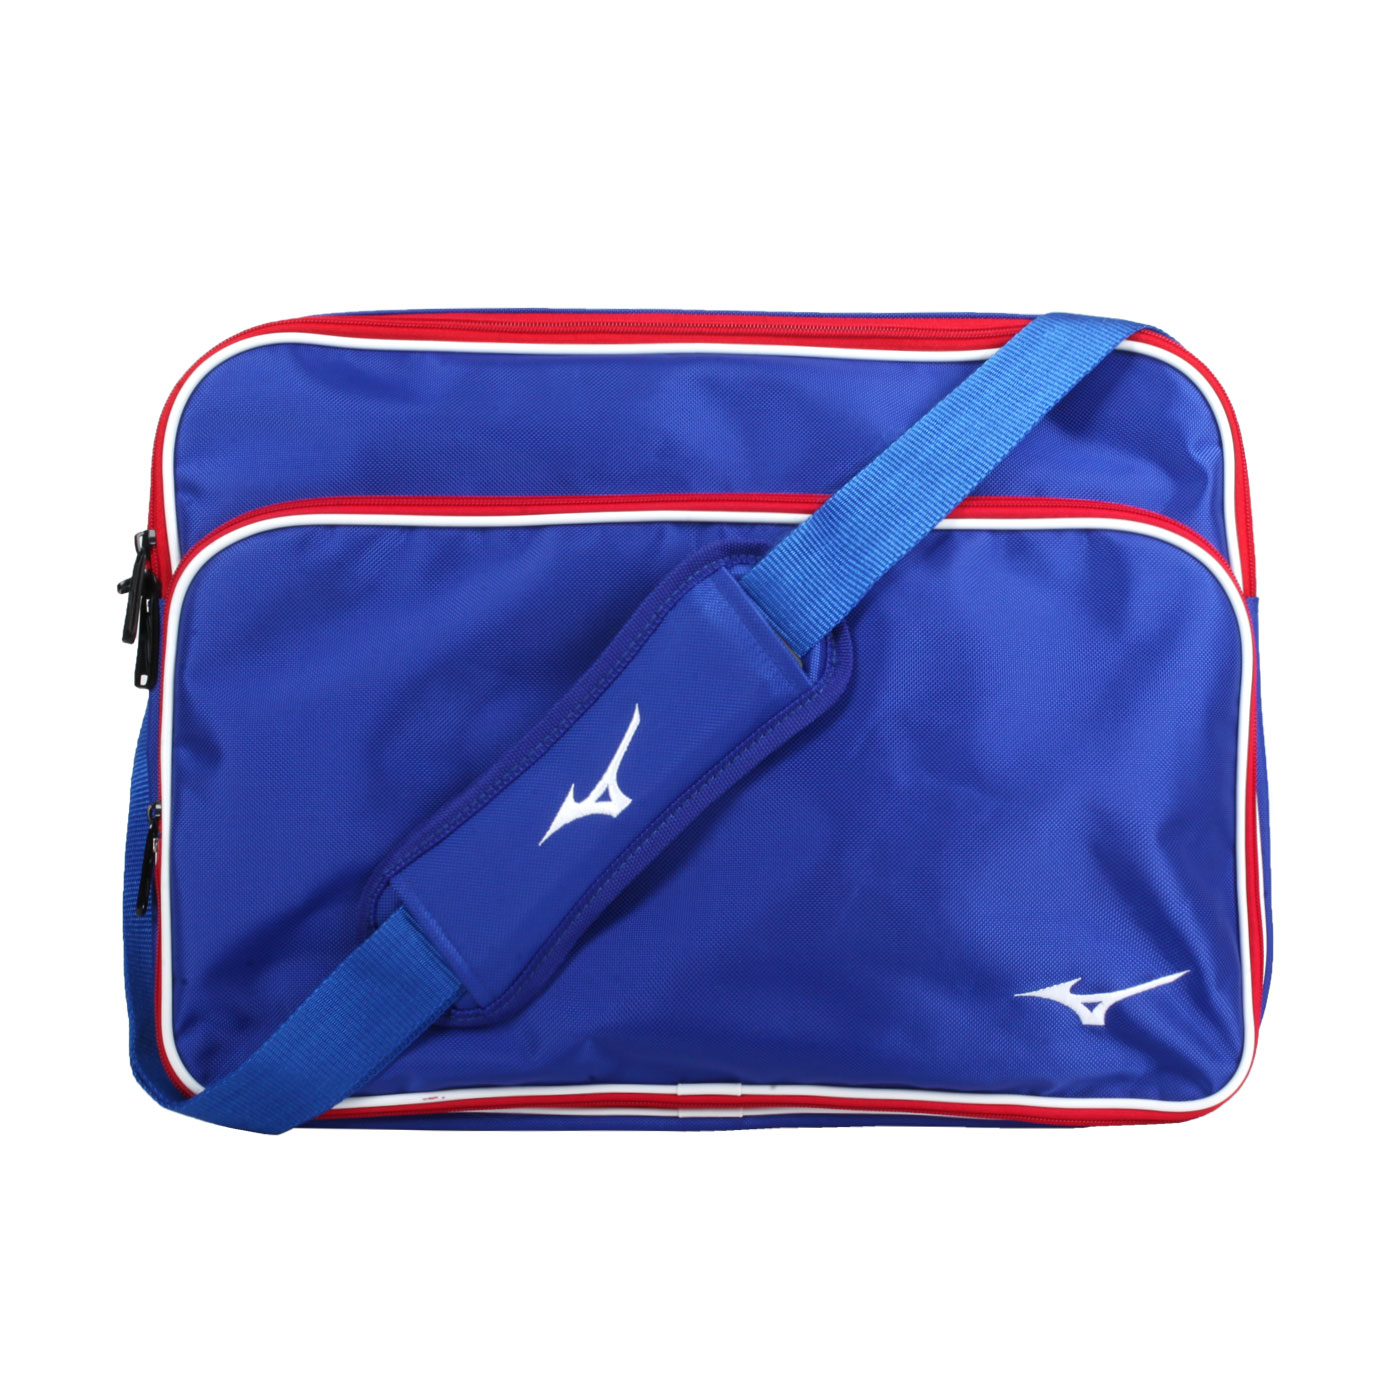 MIZUNO 個人裝備袋 1FTD0X2216 - 藍紅白